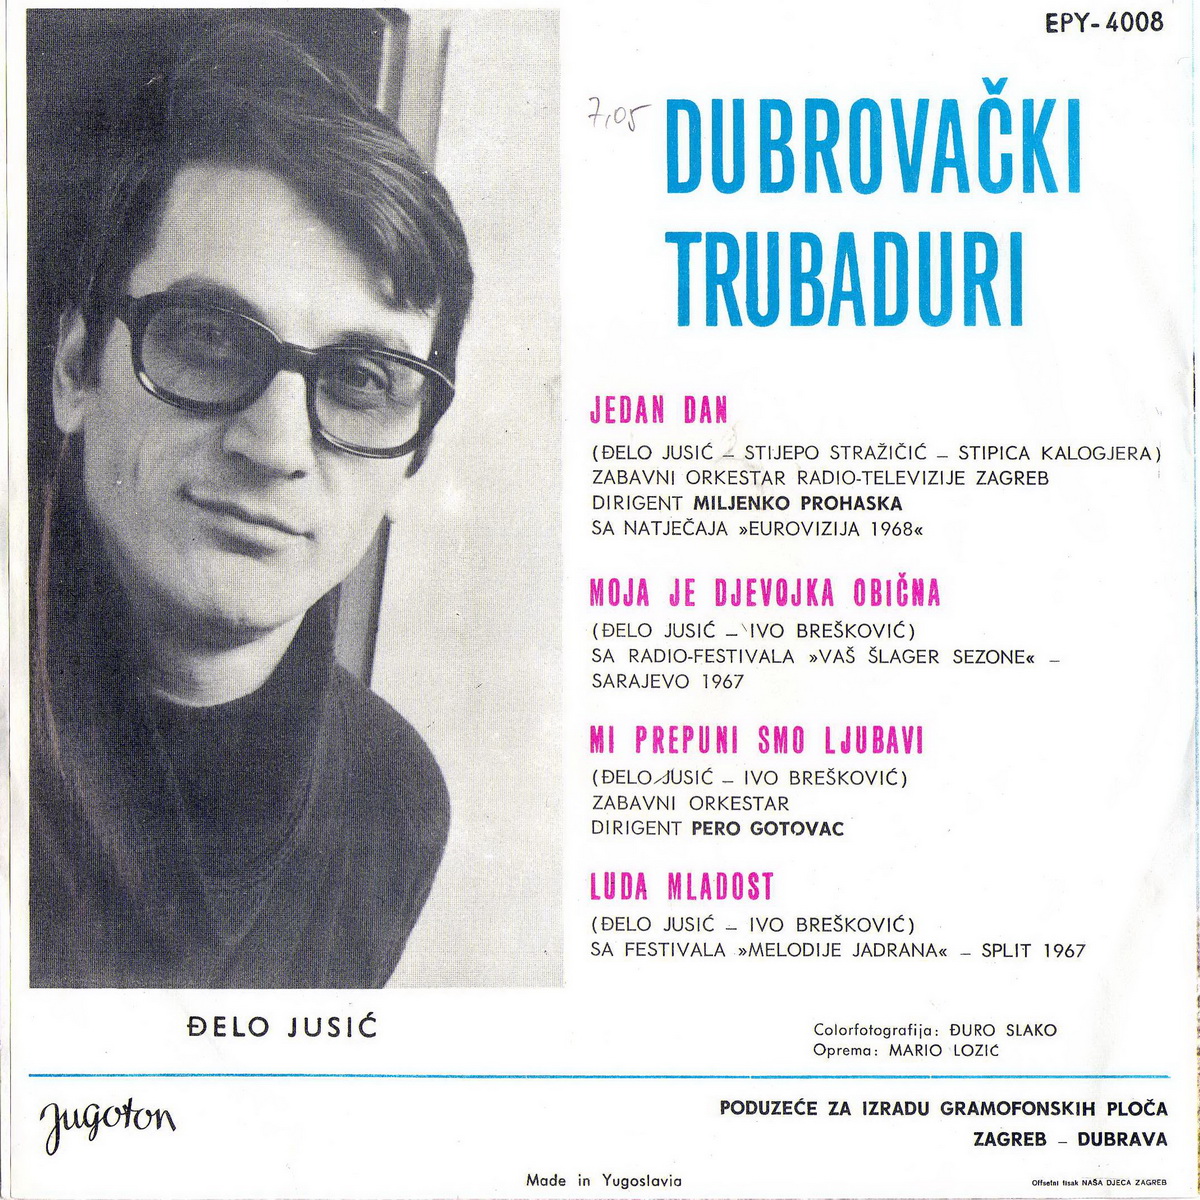 Dubrovacki Trubaduri 1968 Jedan dan b